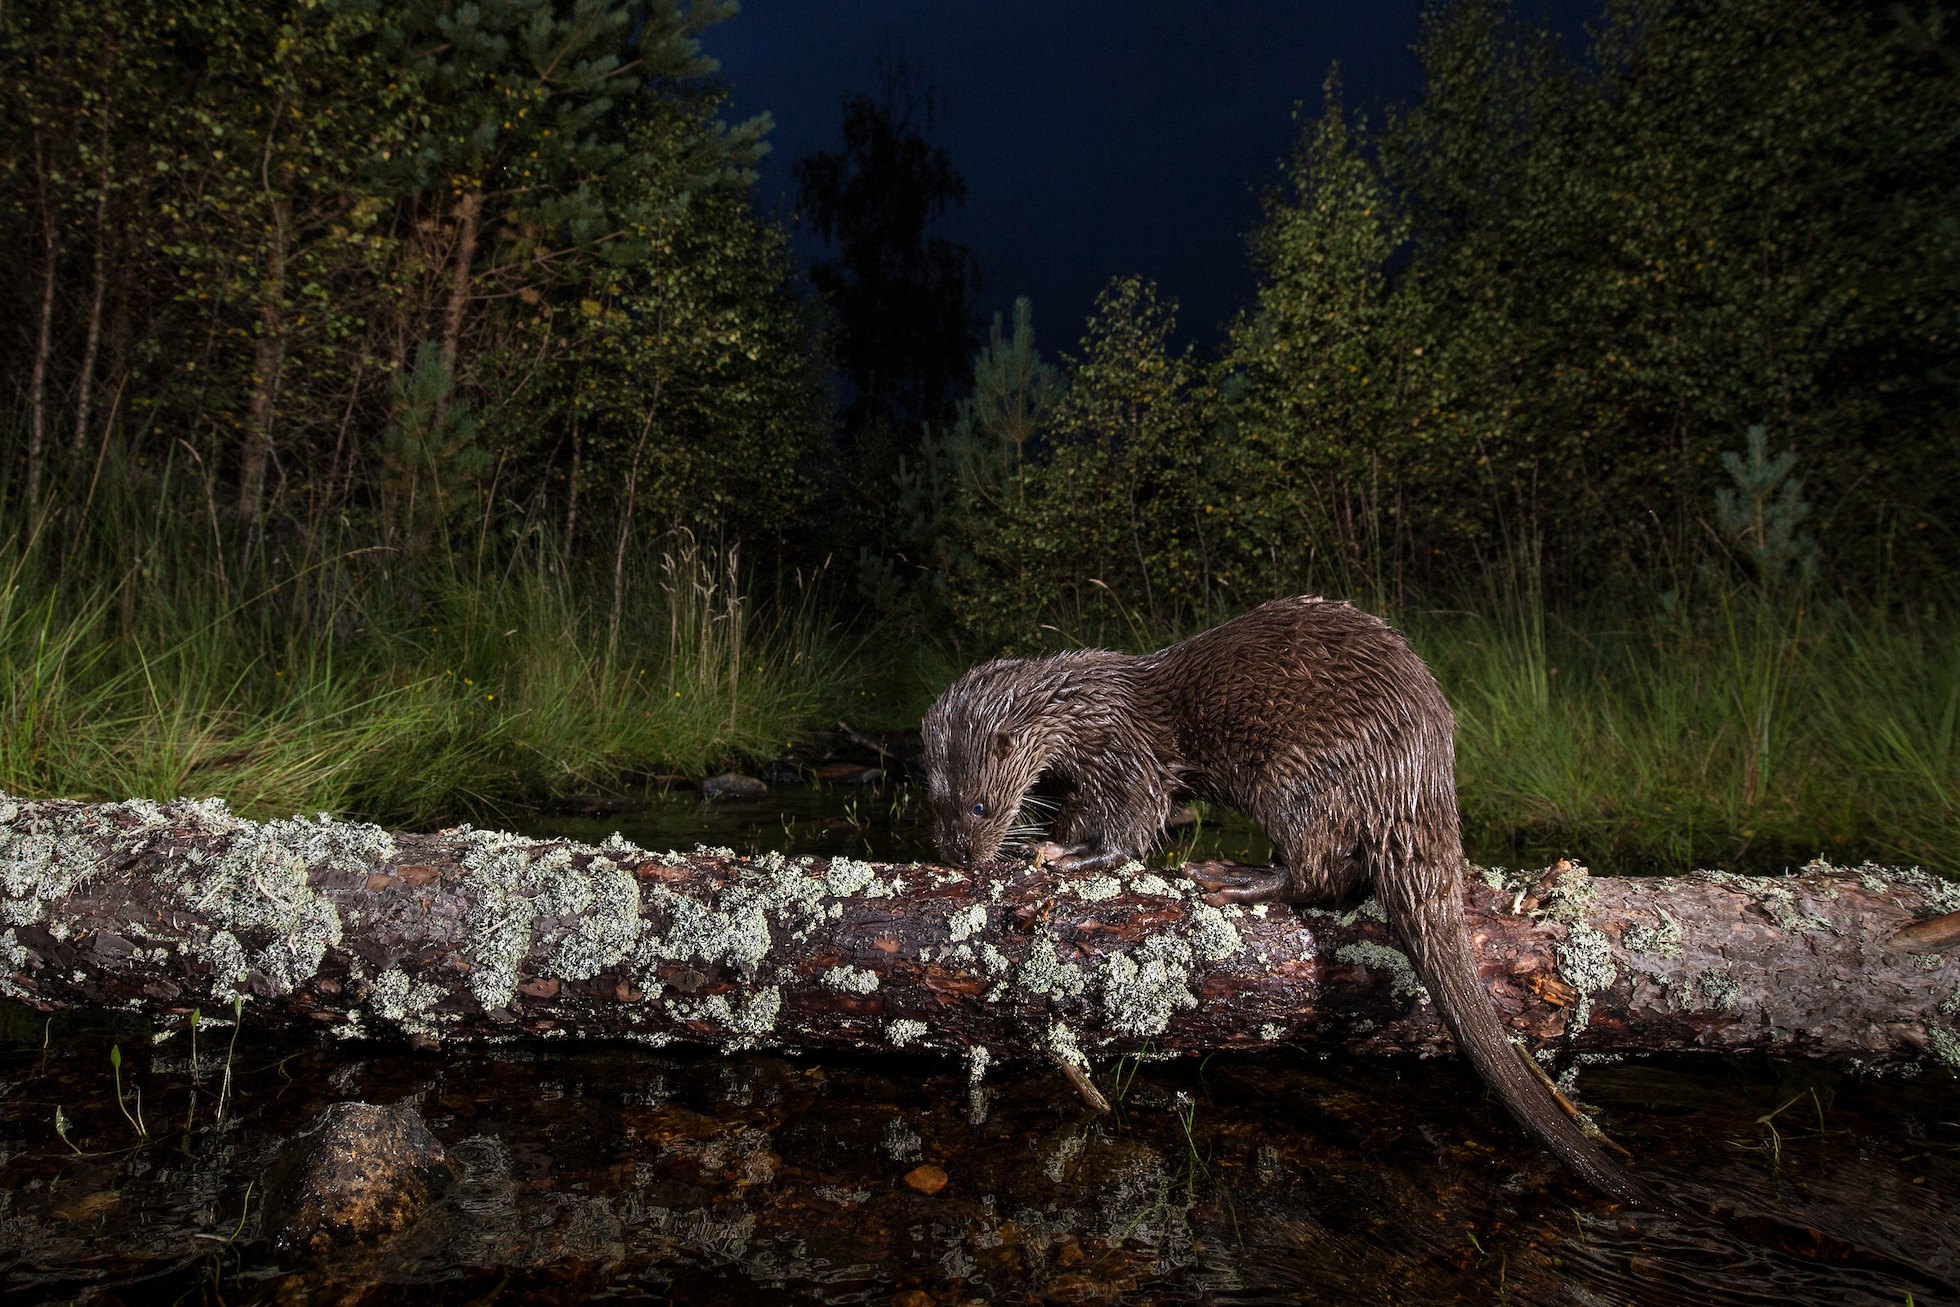 Eurasian otter (Lutra lutra) foraging in freshwater burn, Glenfeshie, Scotland.